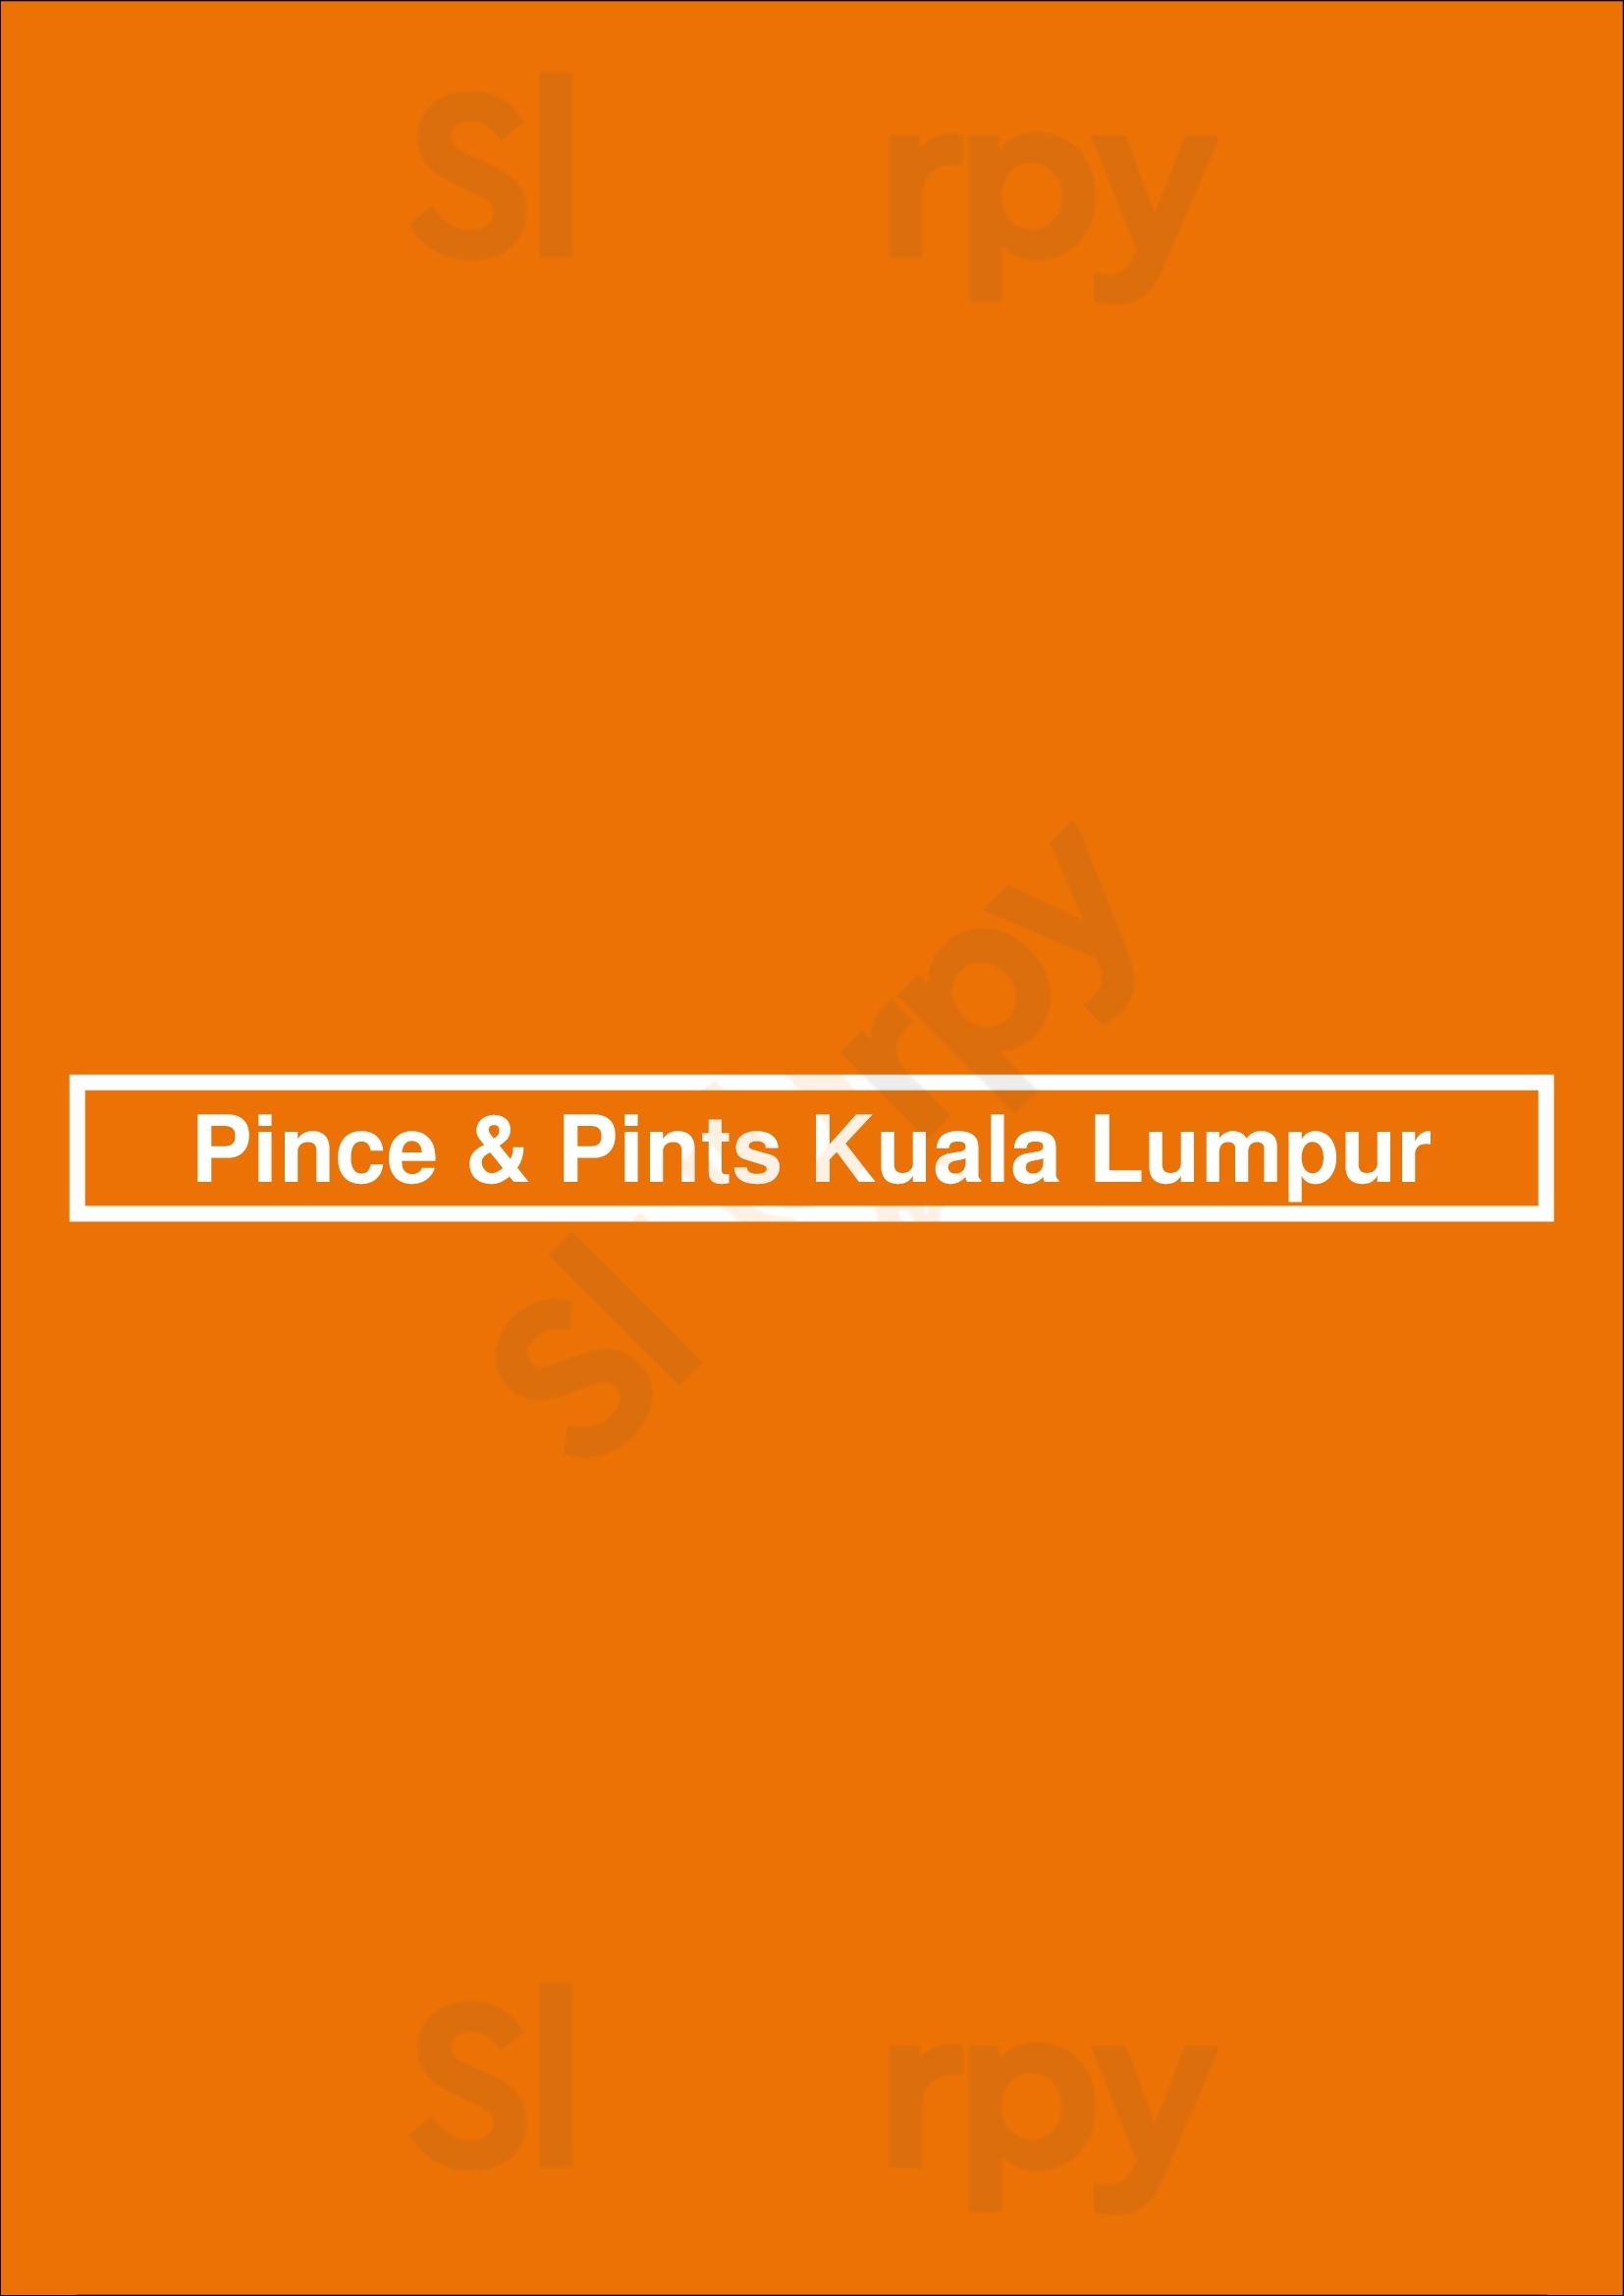 Pince & Pints Kuala Lumpur Kuala Lumpur Menu - 1